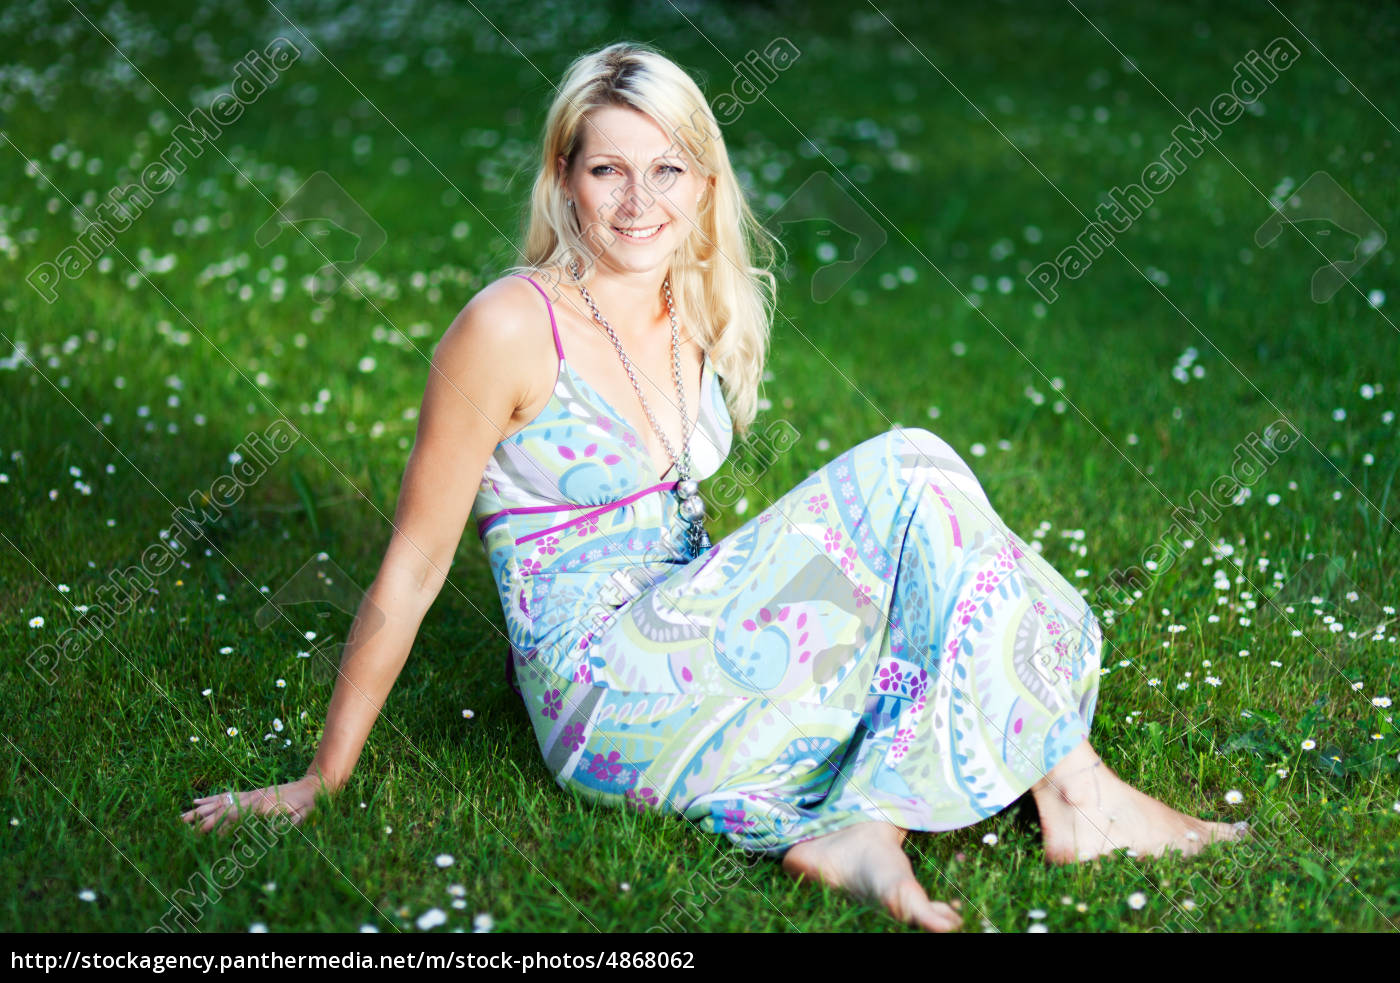 kvinde i en sommerkjole på en eng - Stockphoto #4868062 | PantherMedia Billedbureau